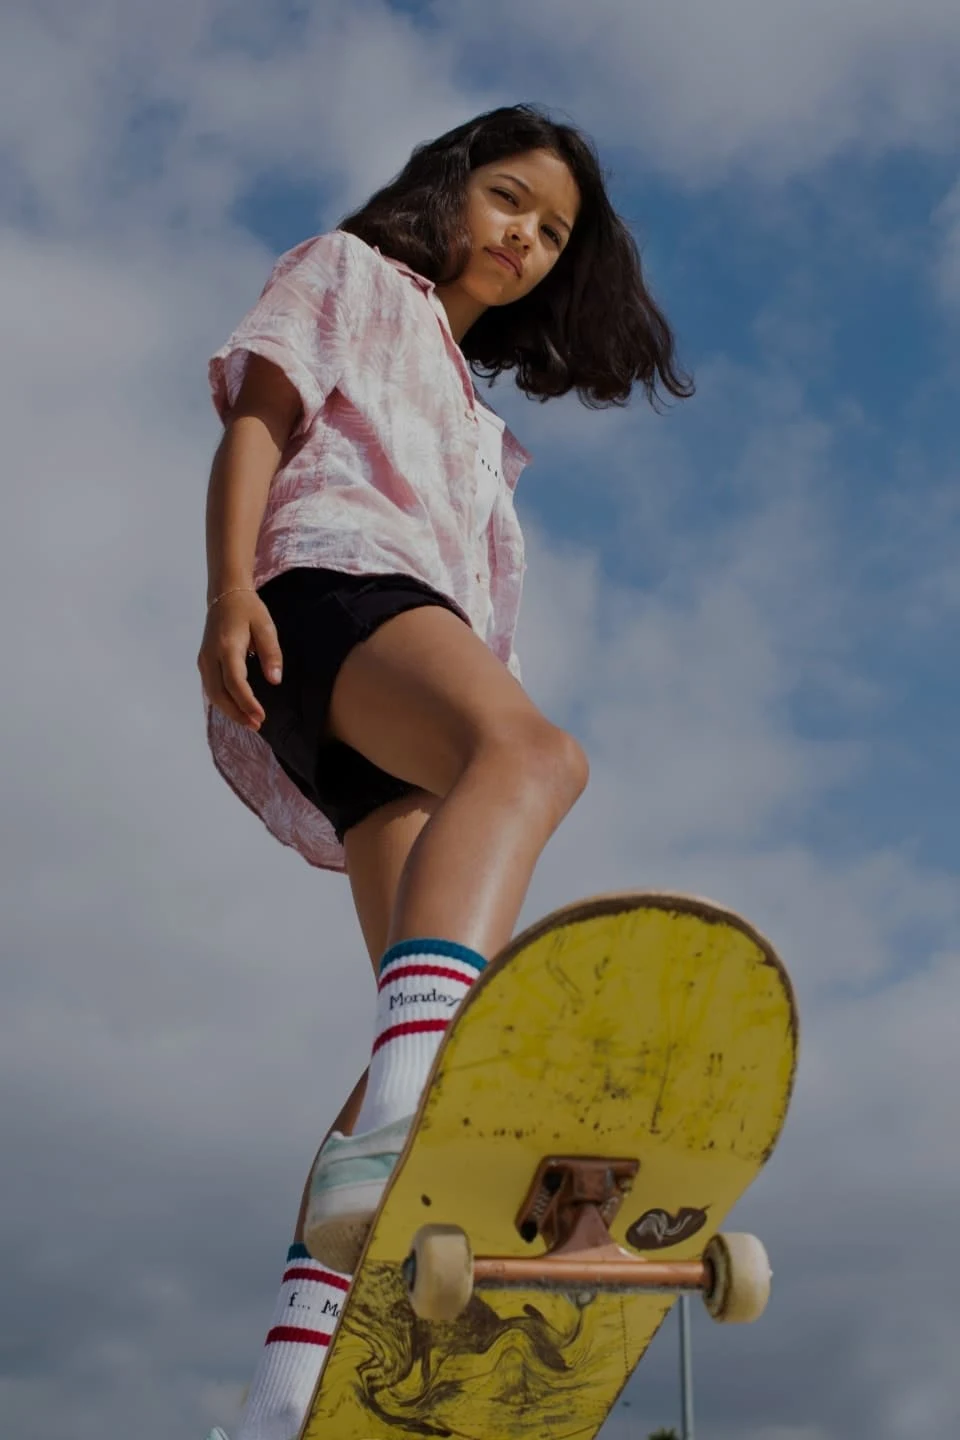 Adolescente brune sur un skateboard jaune